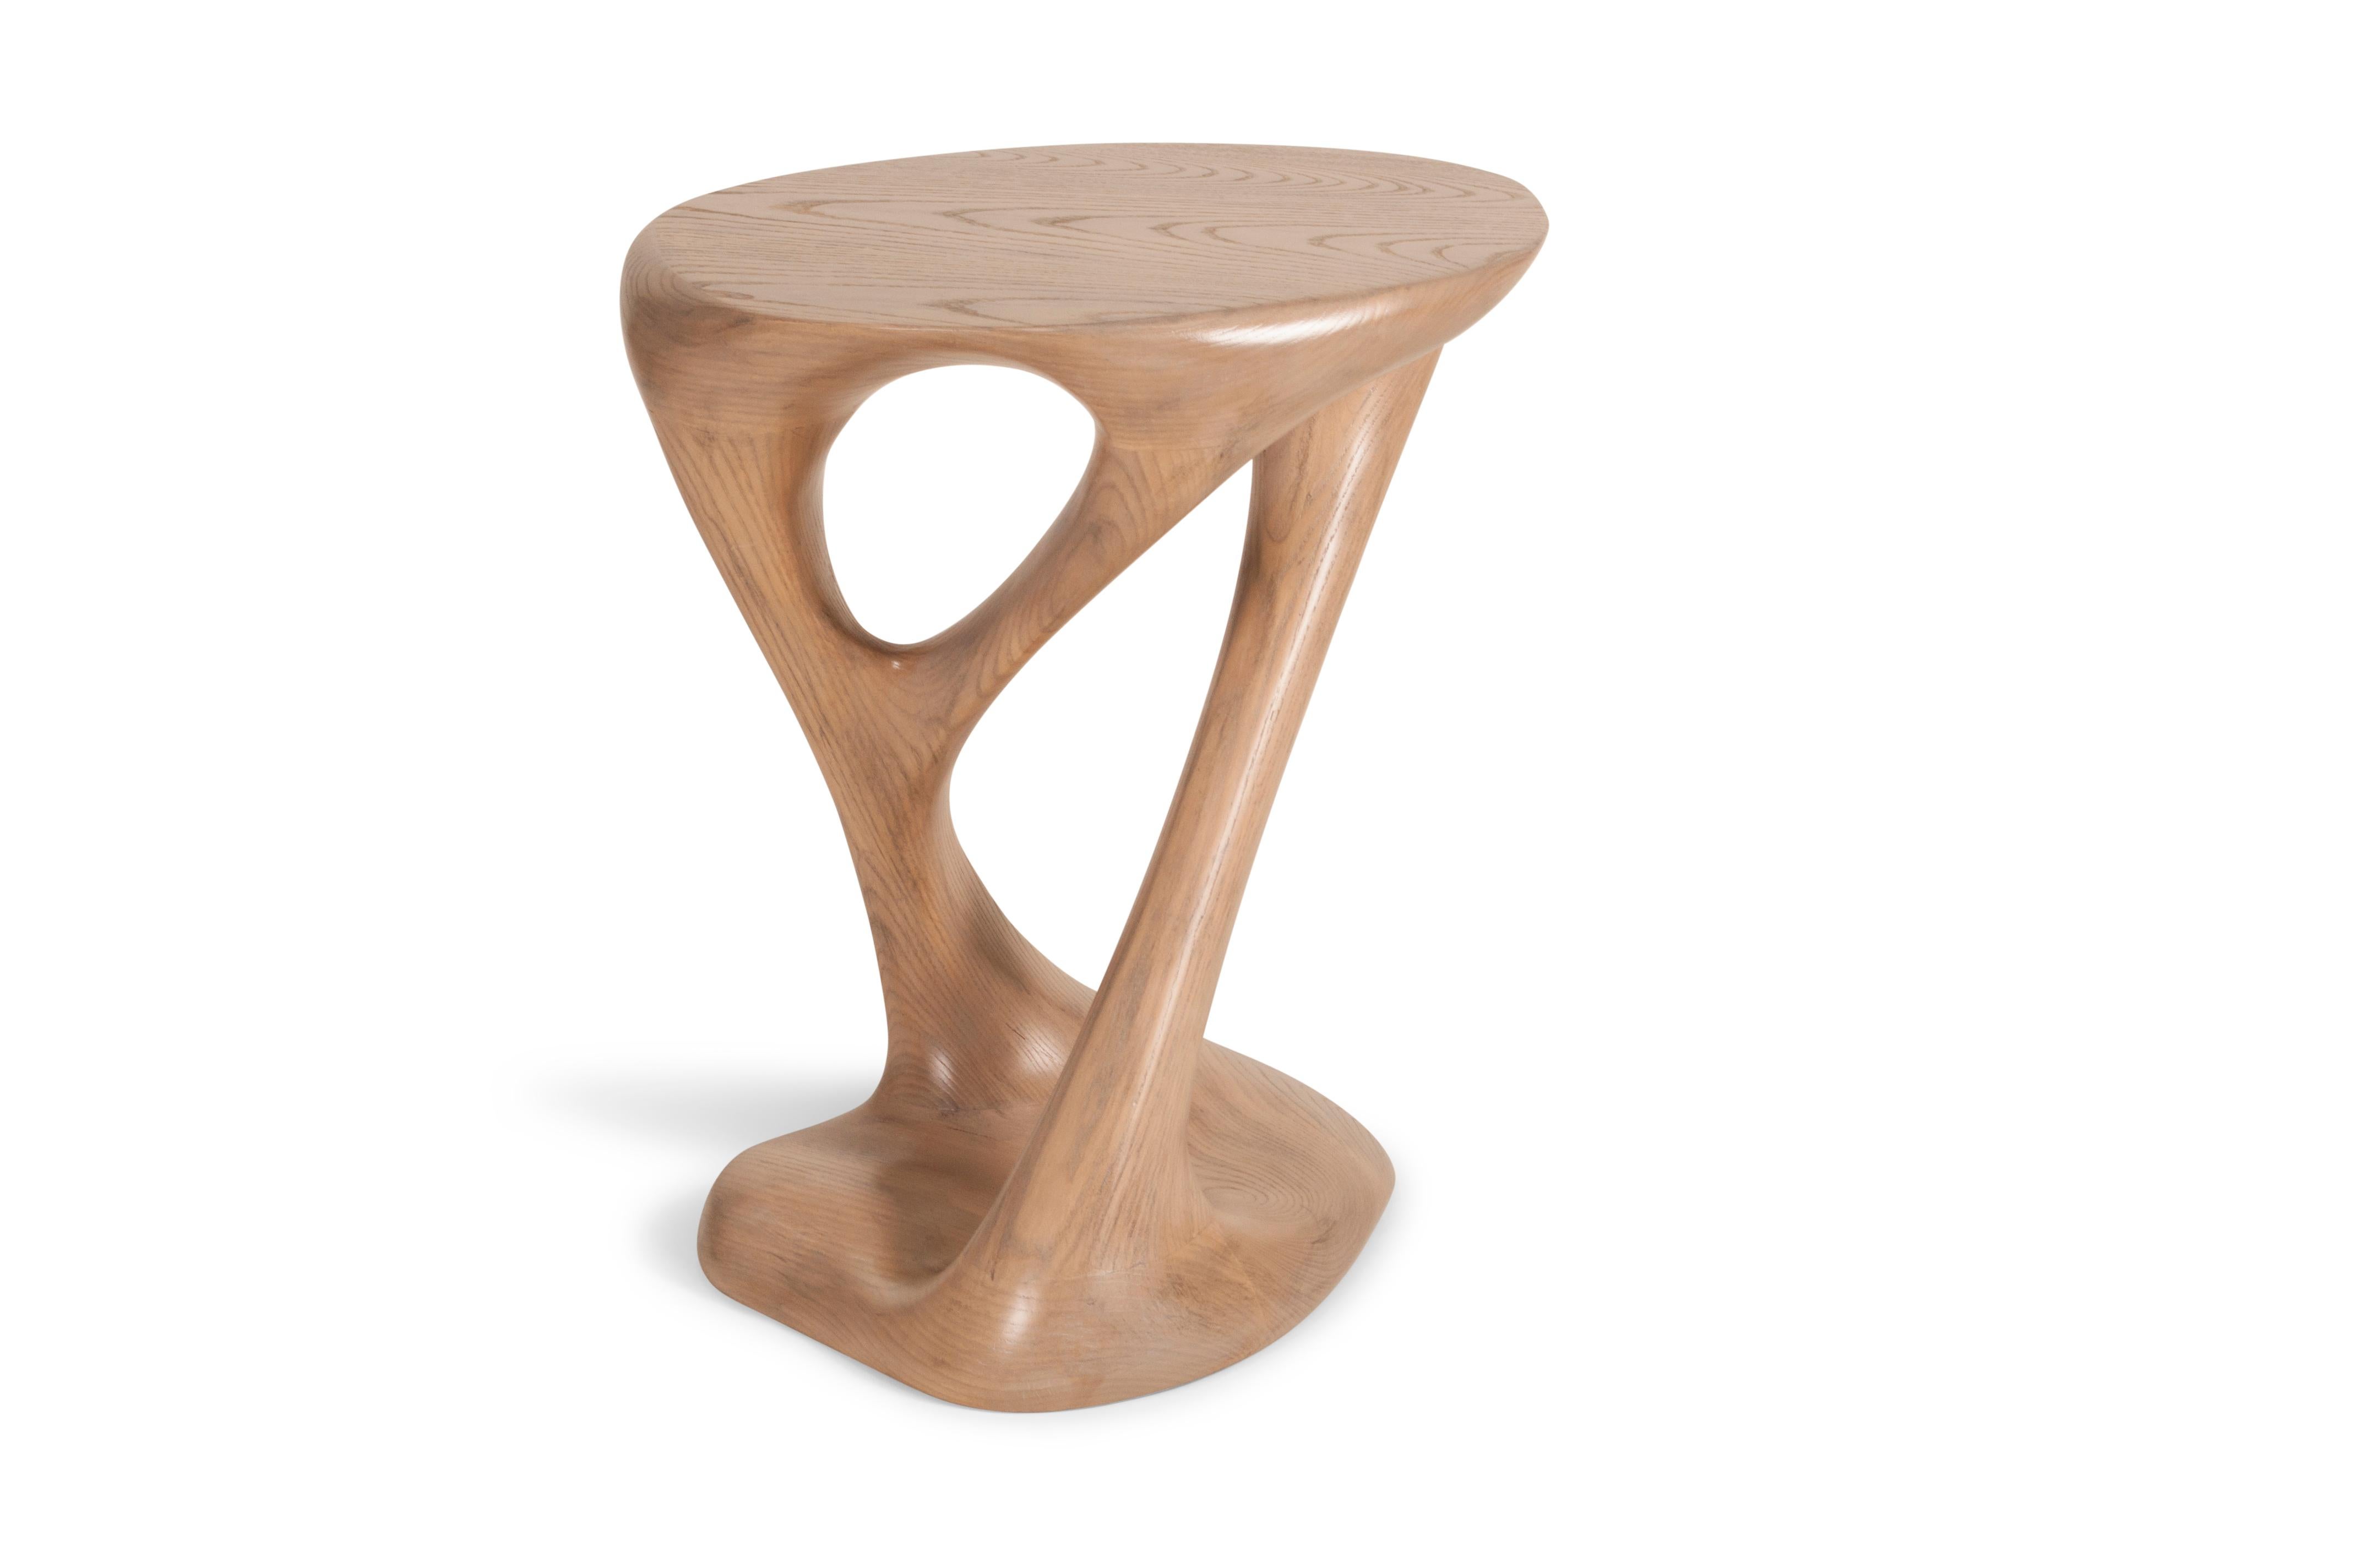 La table d'appoint Amorph Sasha est fabriquée en bois de frêne massif et finie en chêne antique.
Dimensions : 20